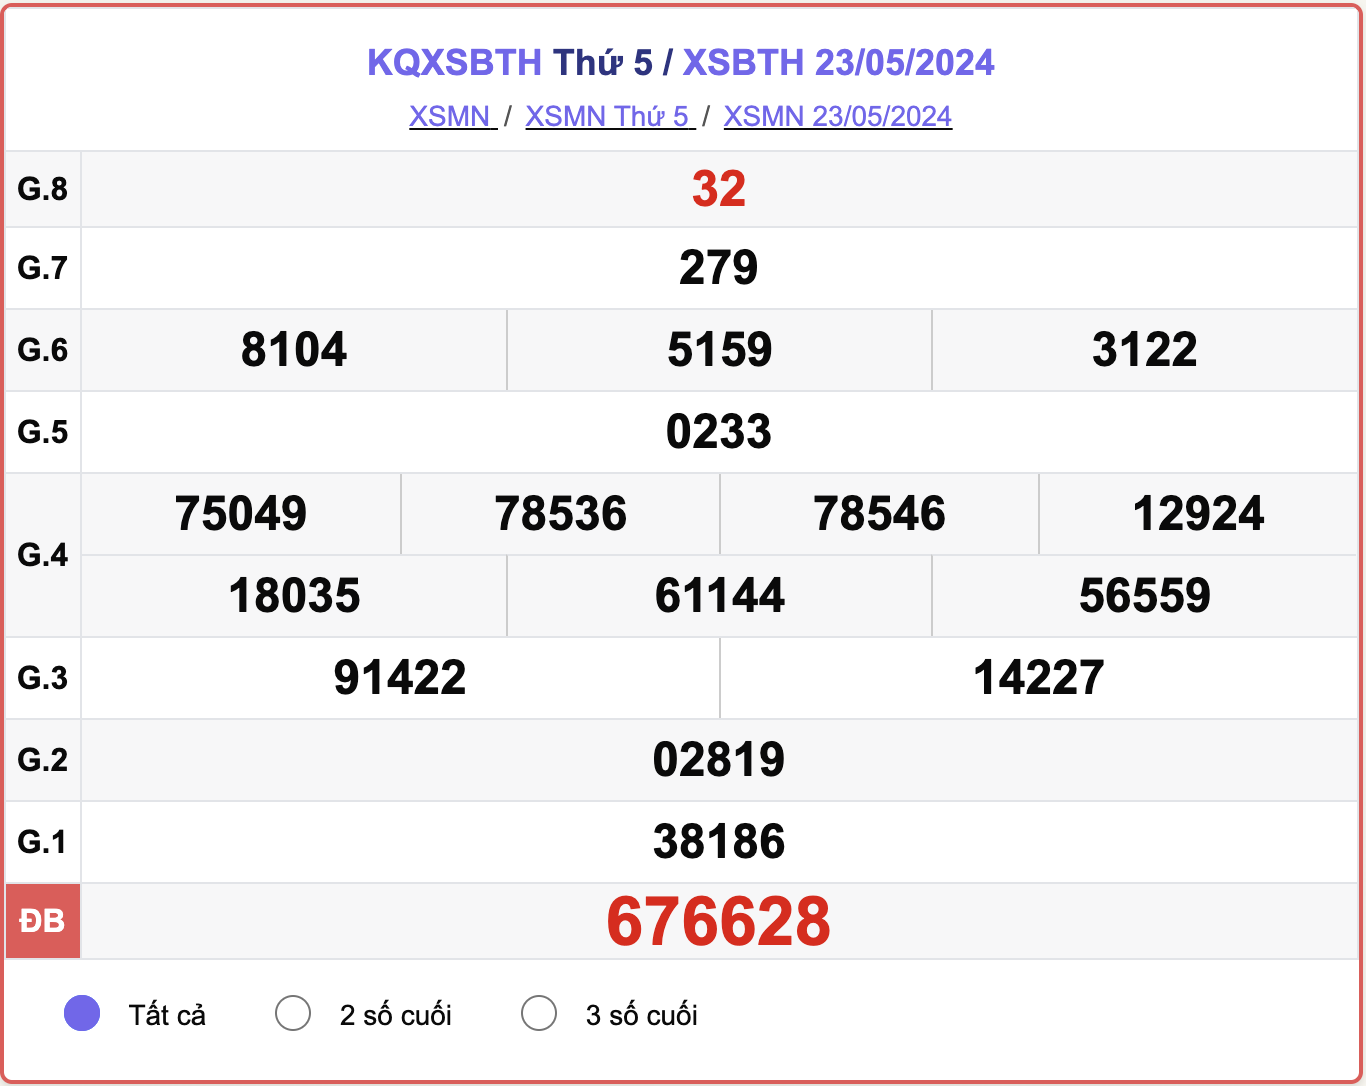 XSBTH 23/5, kết quả xổ số Bình Thuận hôm nay 23/5/2024.